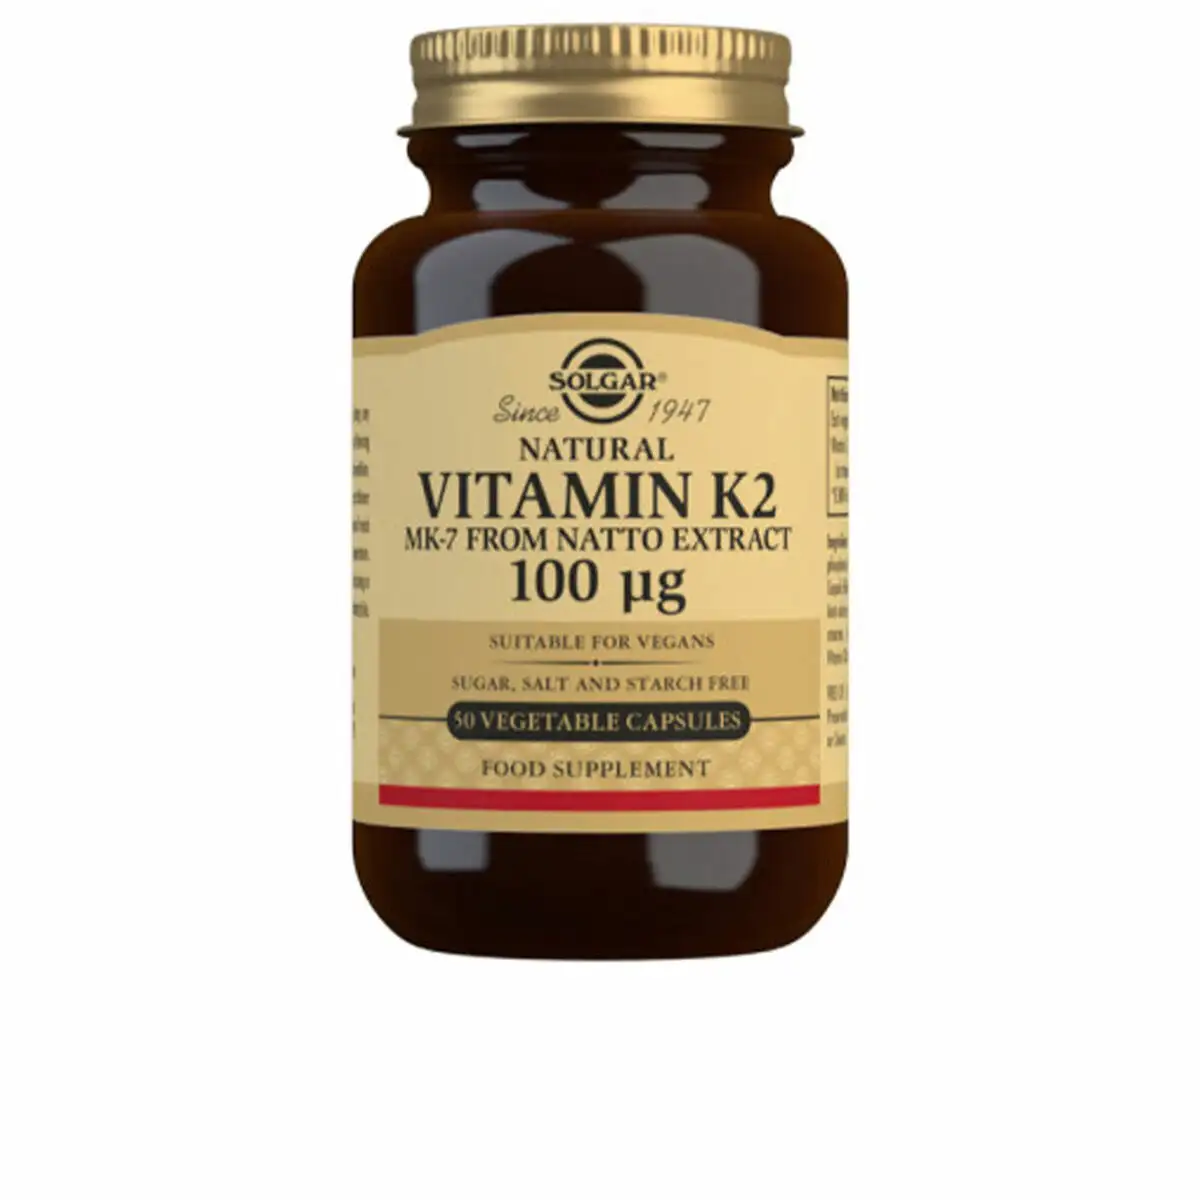 Vitamine k2 avec mk 7 naturel extrait de natto solgar k_7070. Bienvenue chez DIAYTAR SENEGAL - Où Chaque Achat Fait une Différence. Découvrez notre gamme de produits qui reflètent l'engagement envers la qualité et le respect de l'environnement.